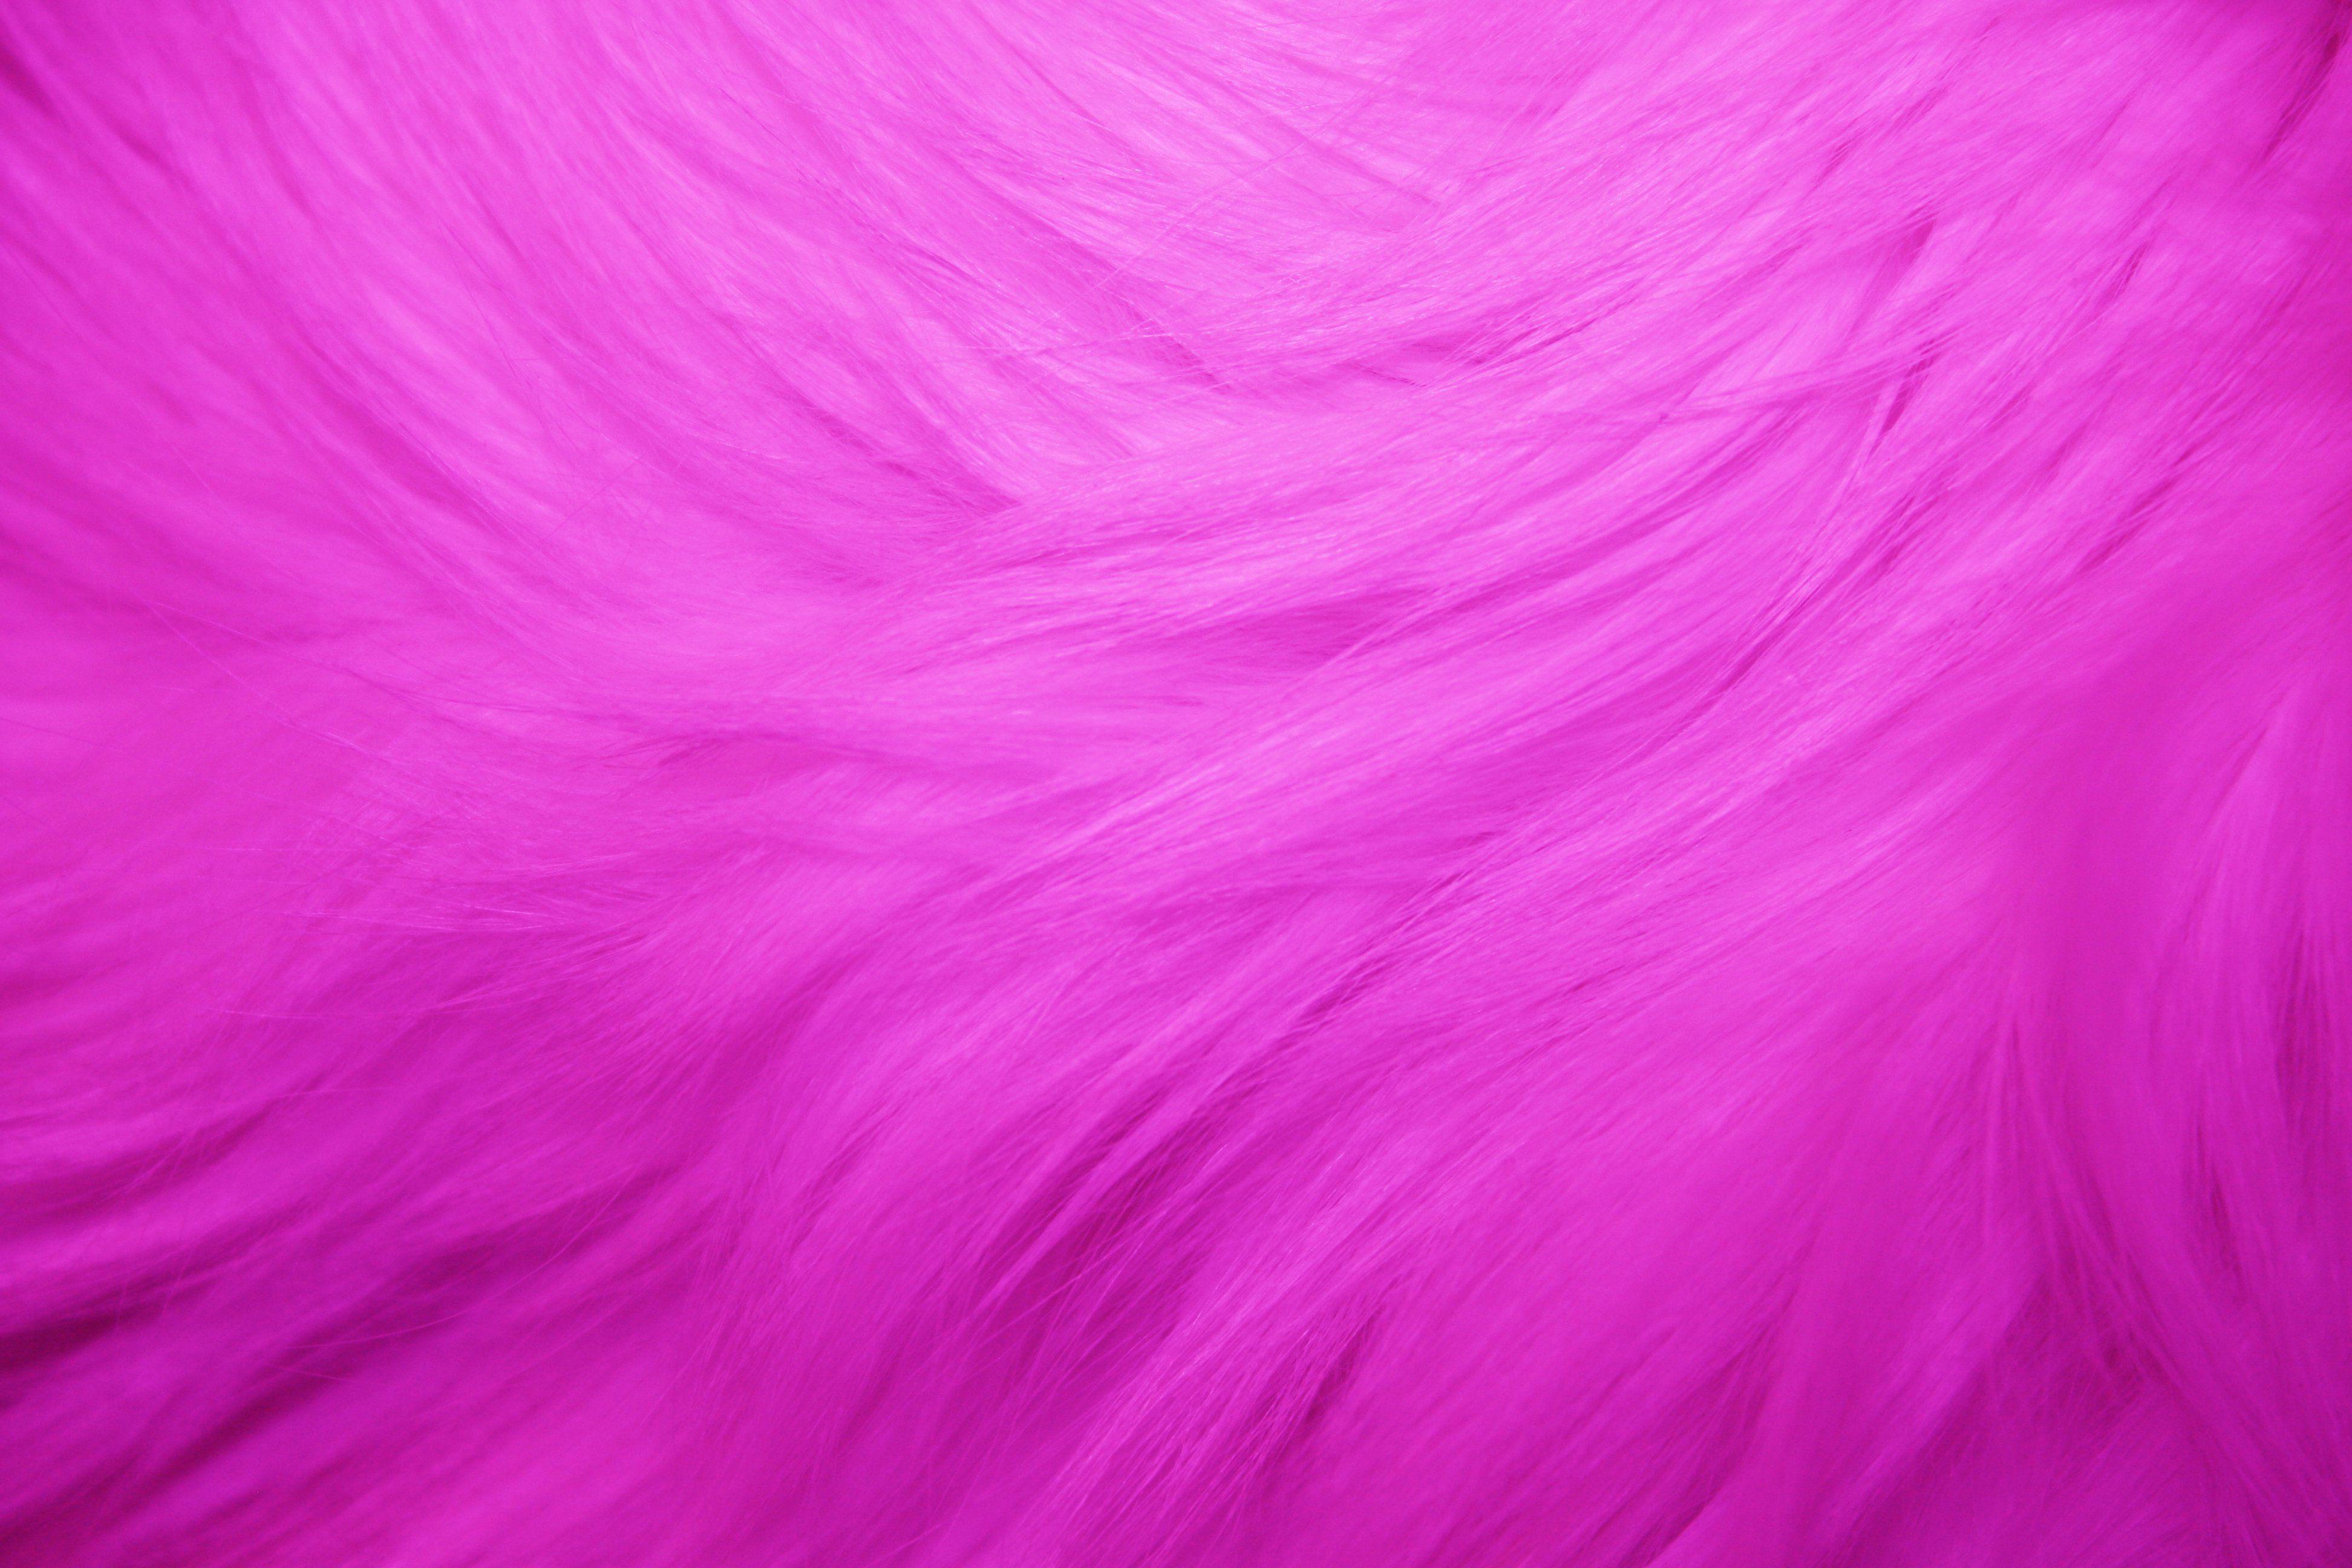 Hình nền tóc hồng 3888x2592 - 50 Hình nền màu hồng đẹp nhất